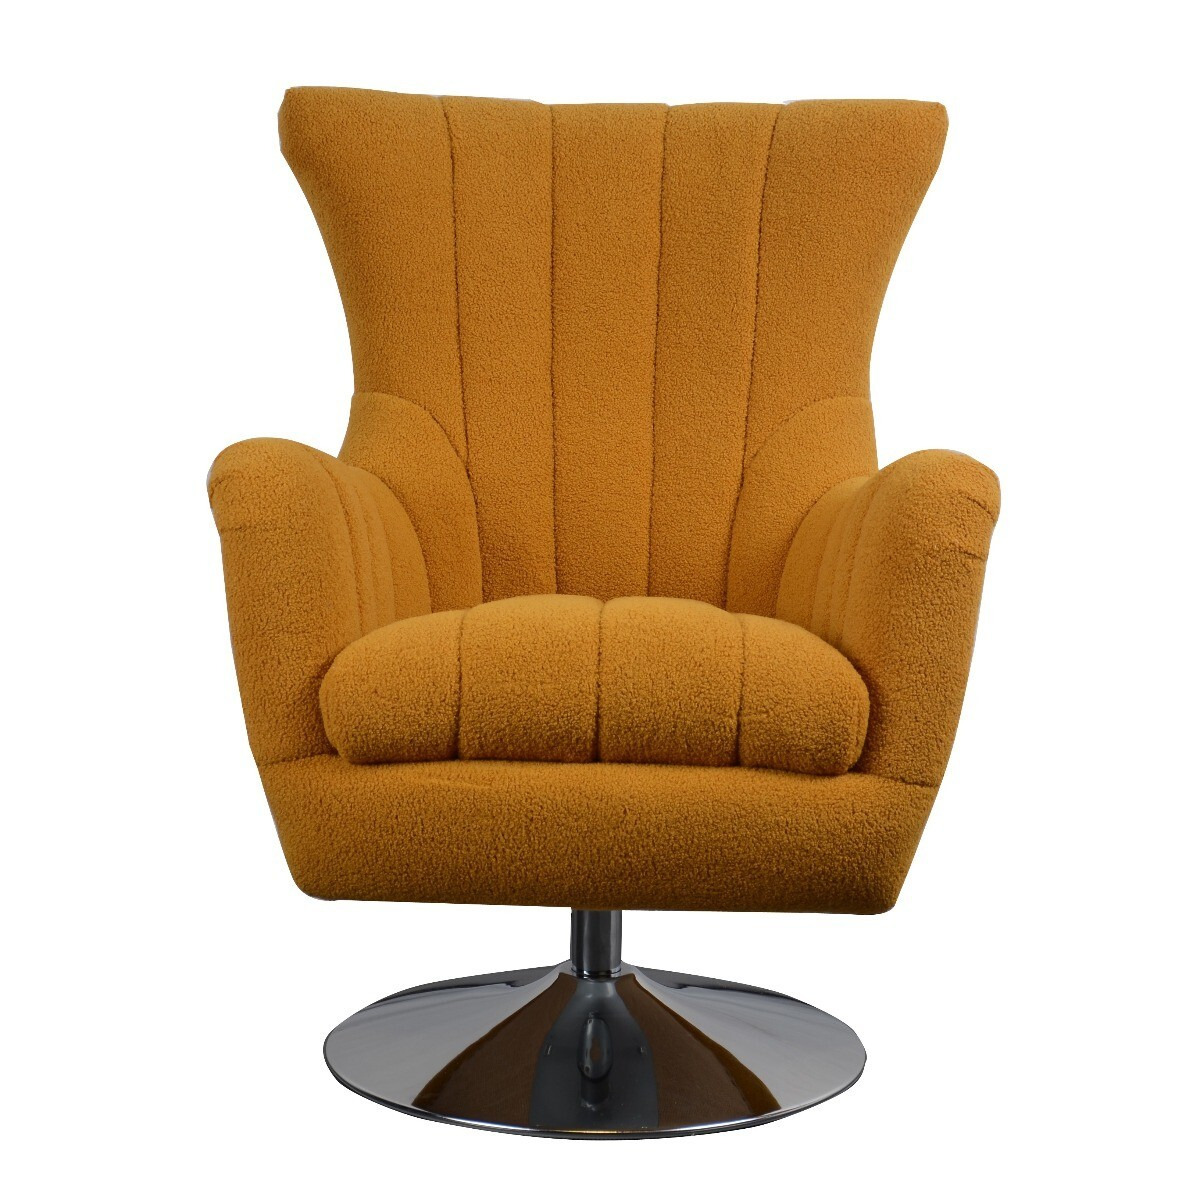 Morteson Saffron Swivel Chair